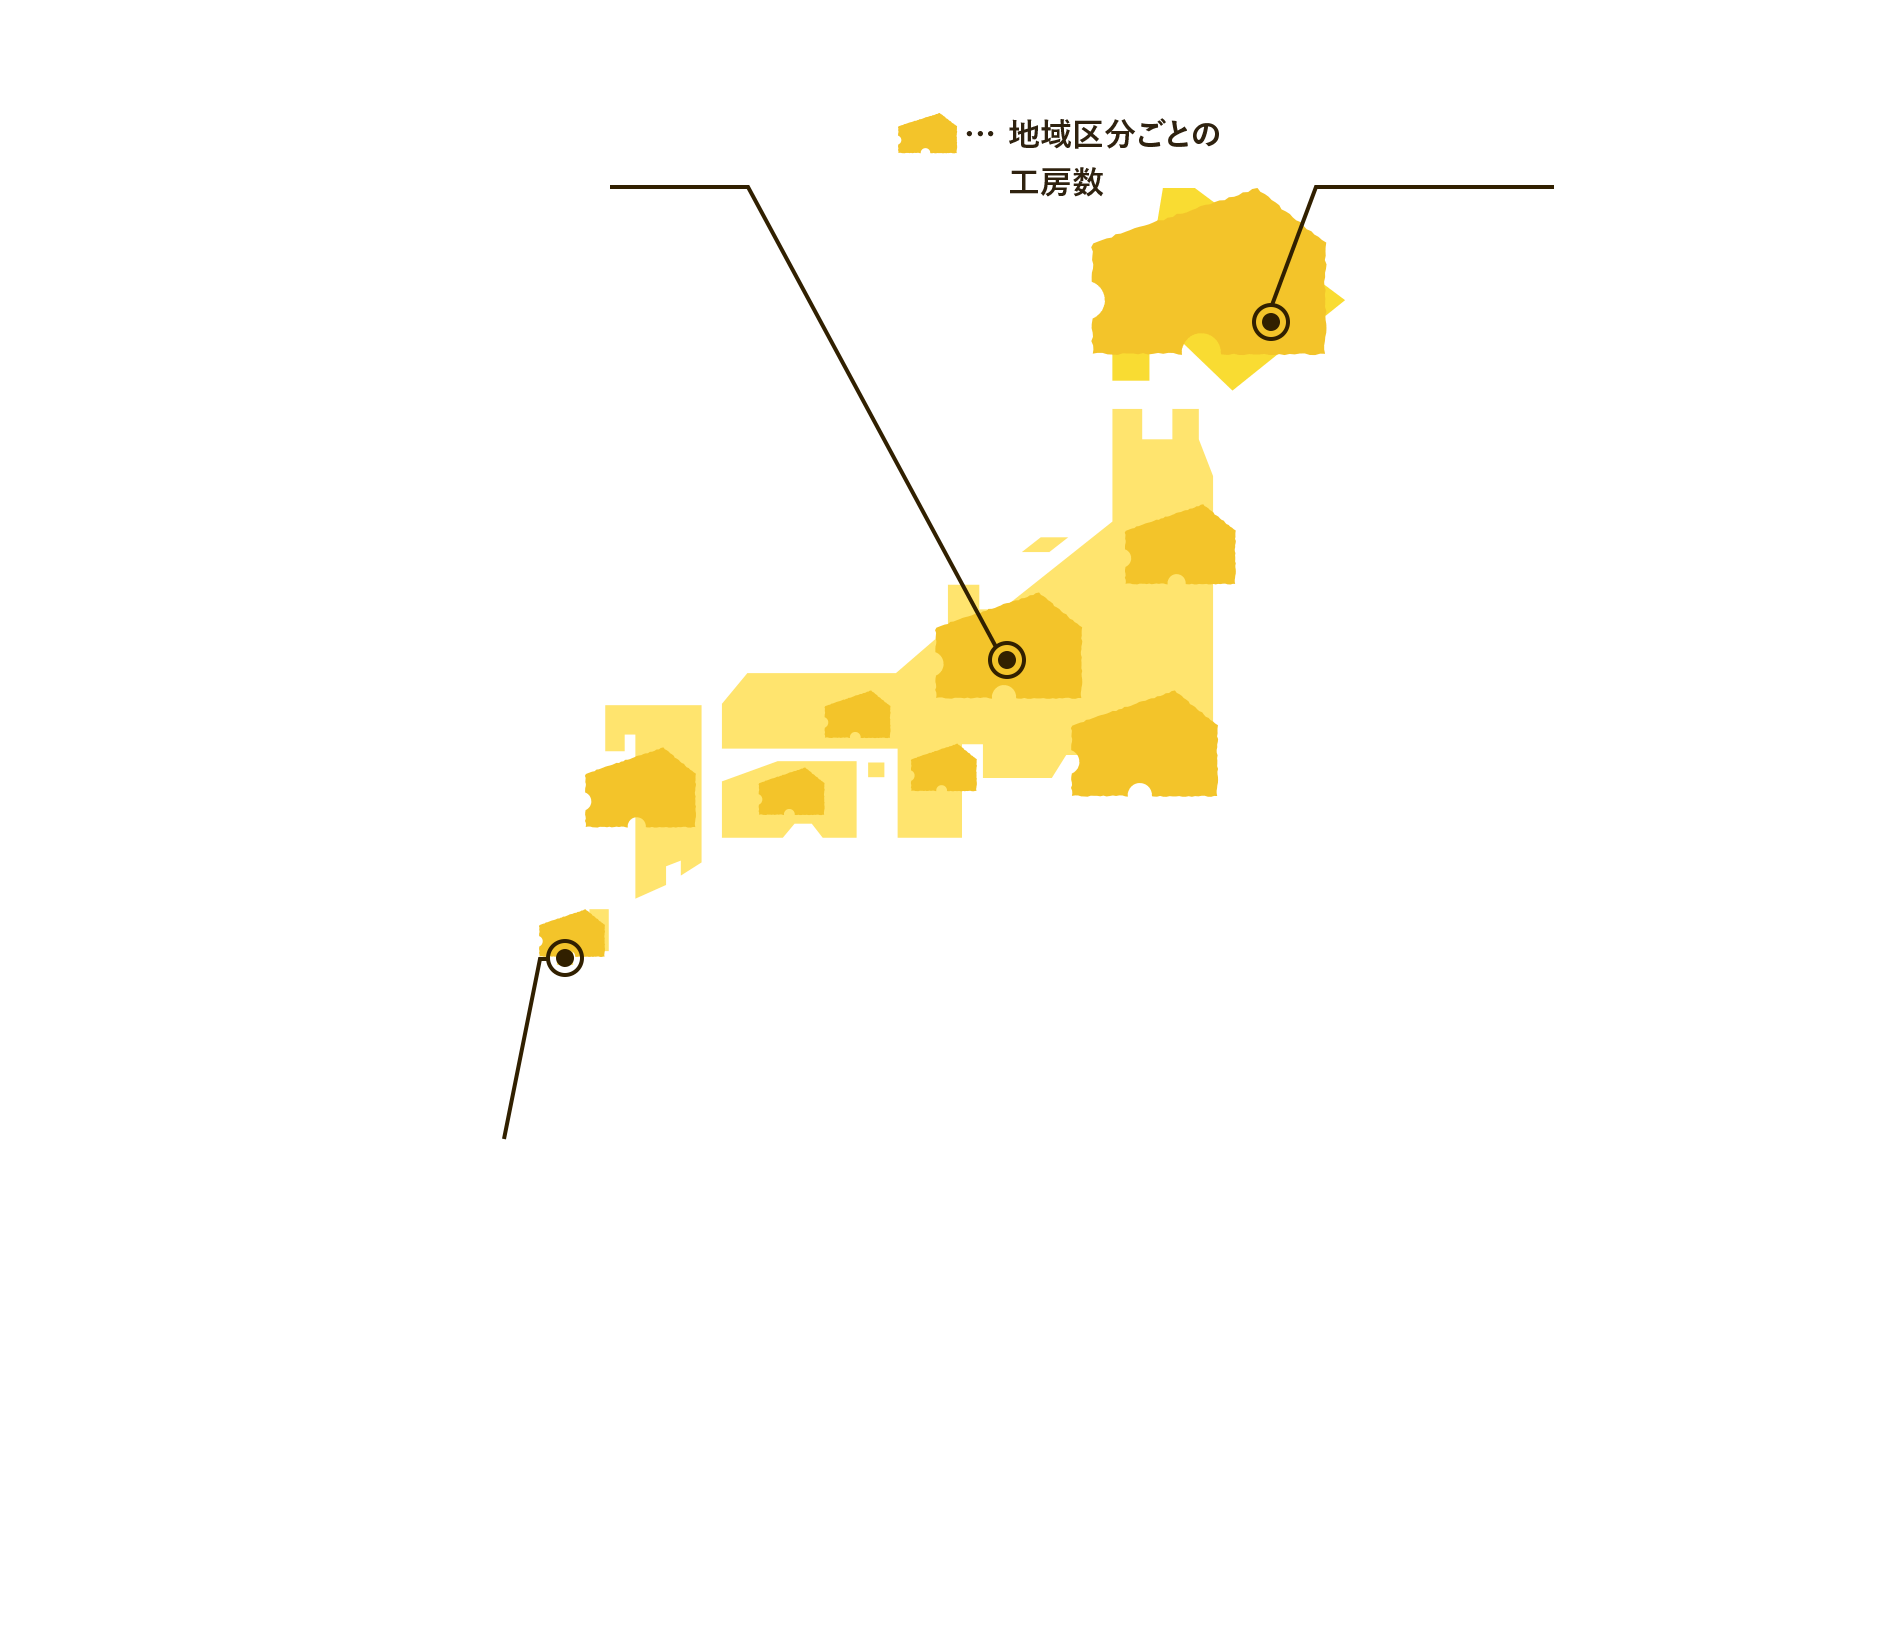 日本地図 地域区分ごとの工房数